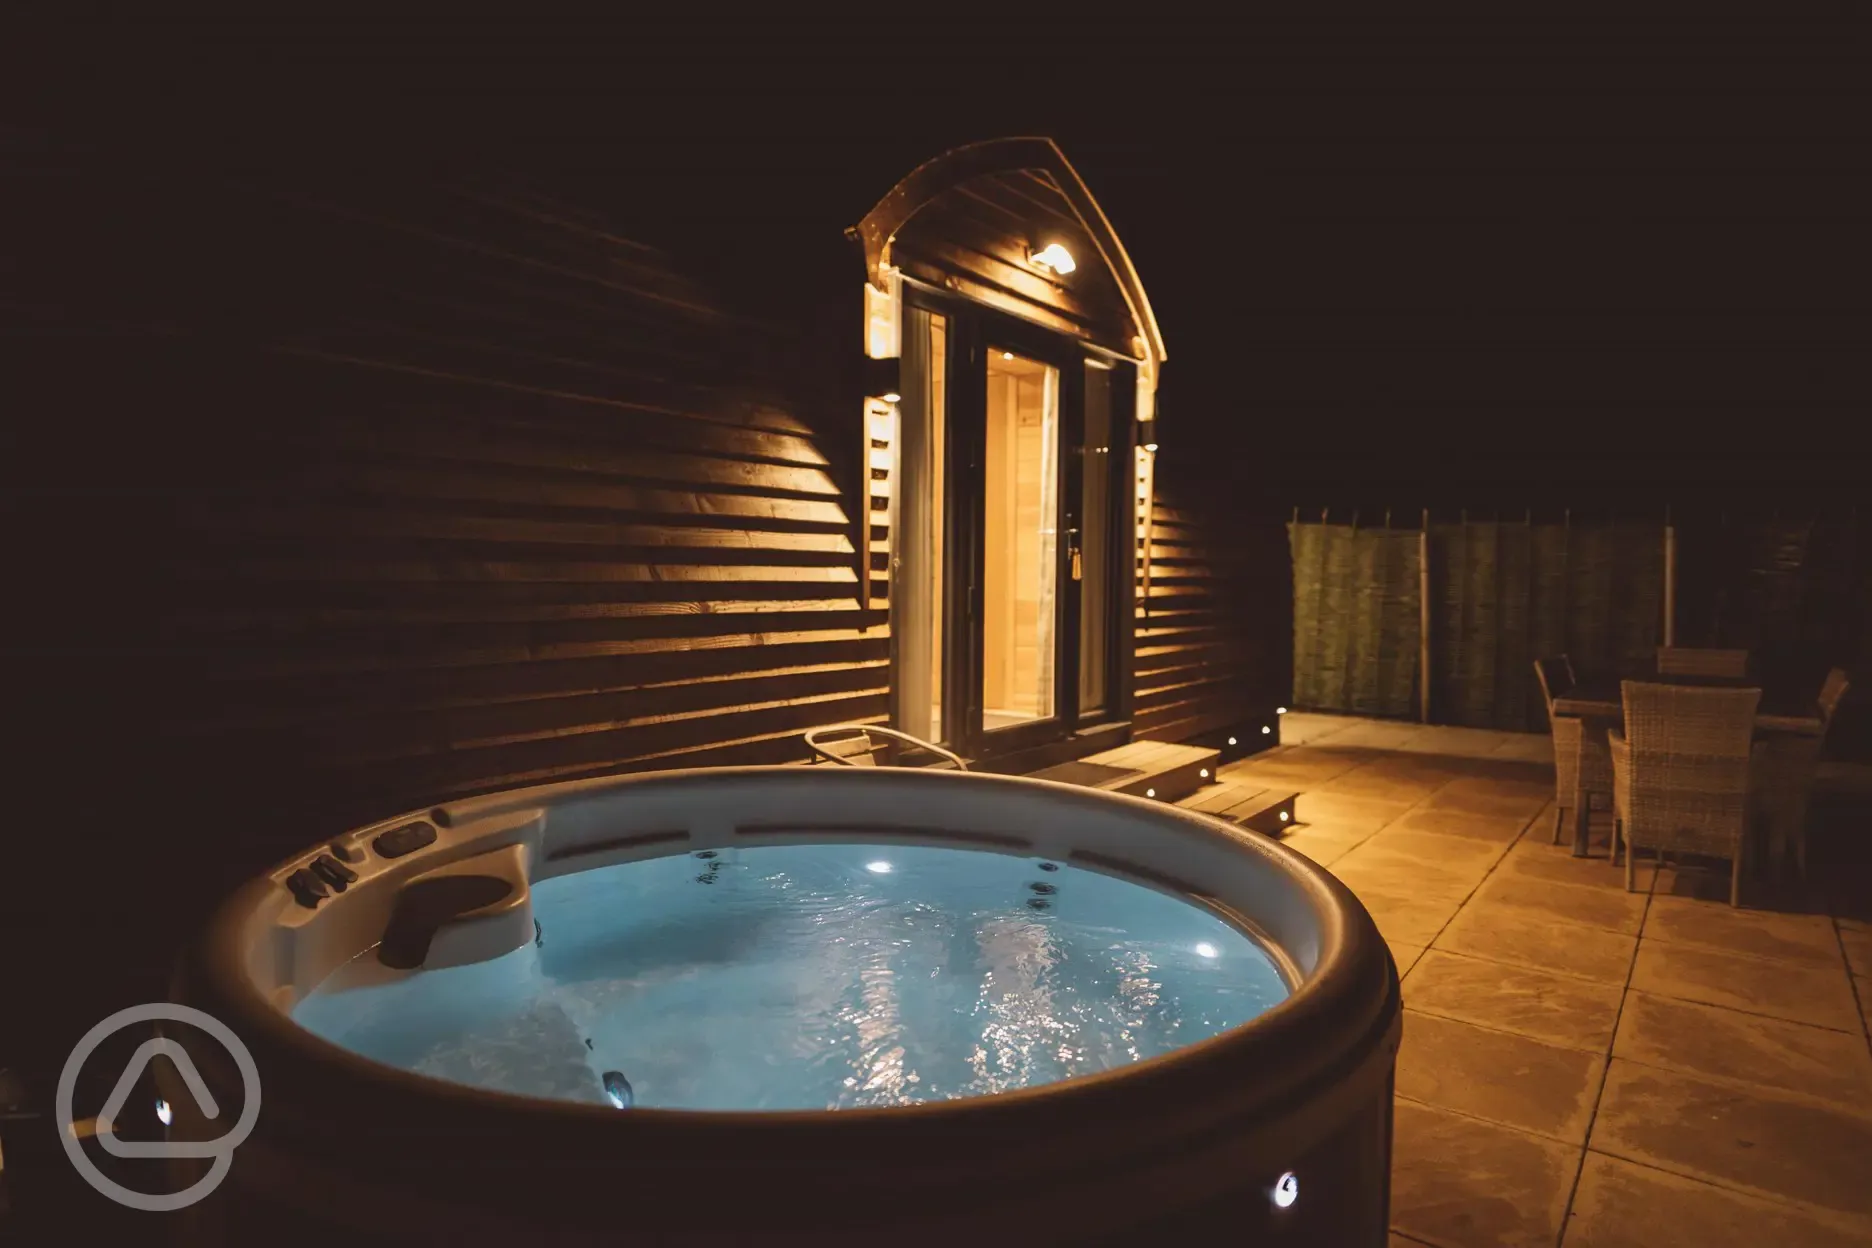 Hot tub at night at the Lodge